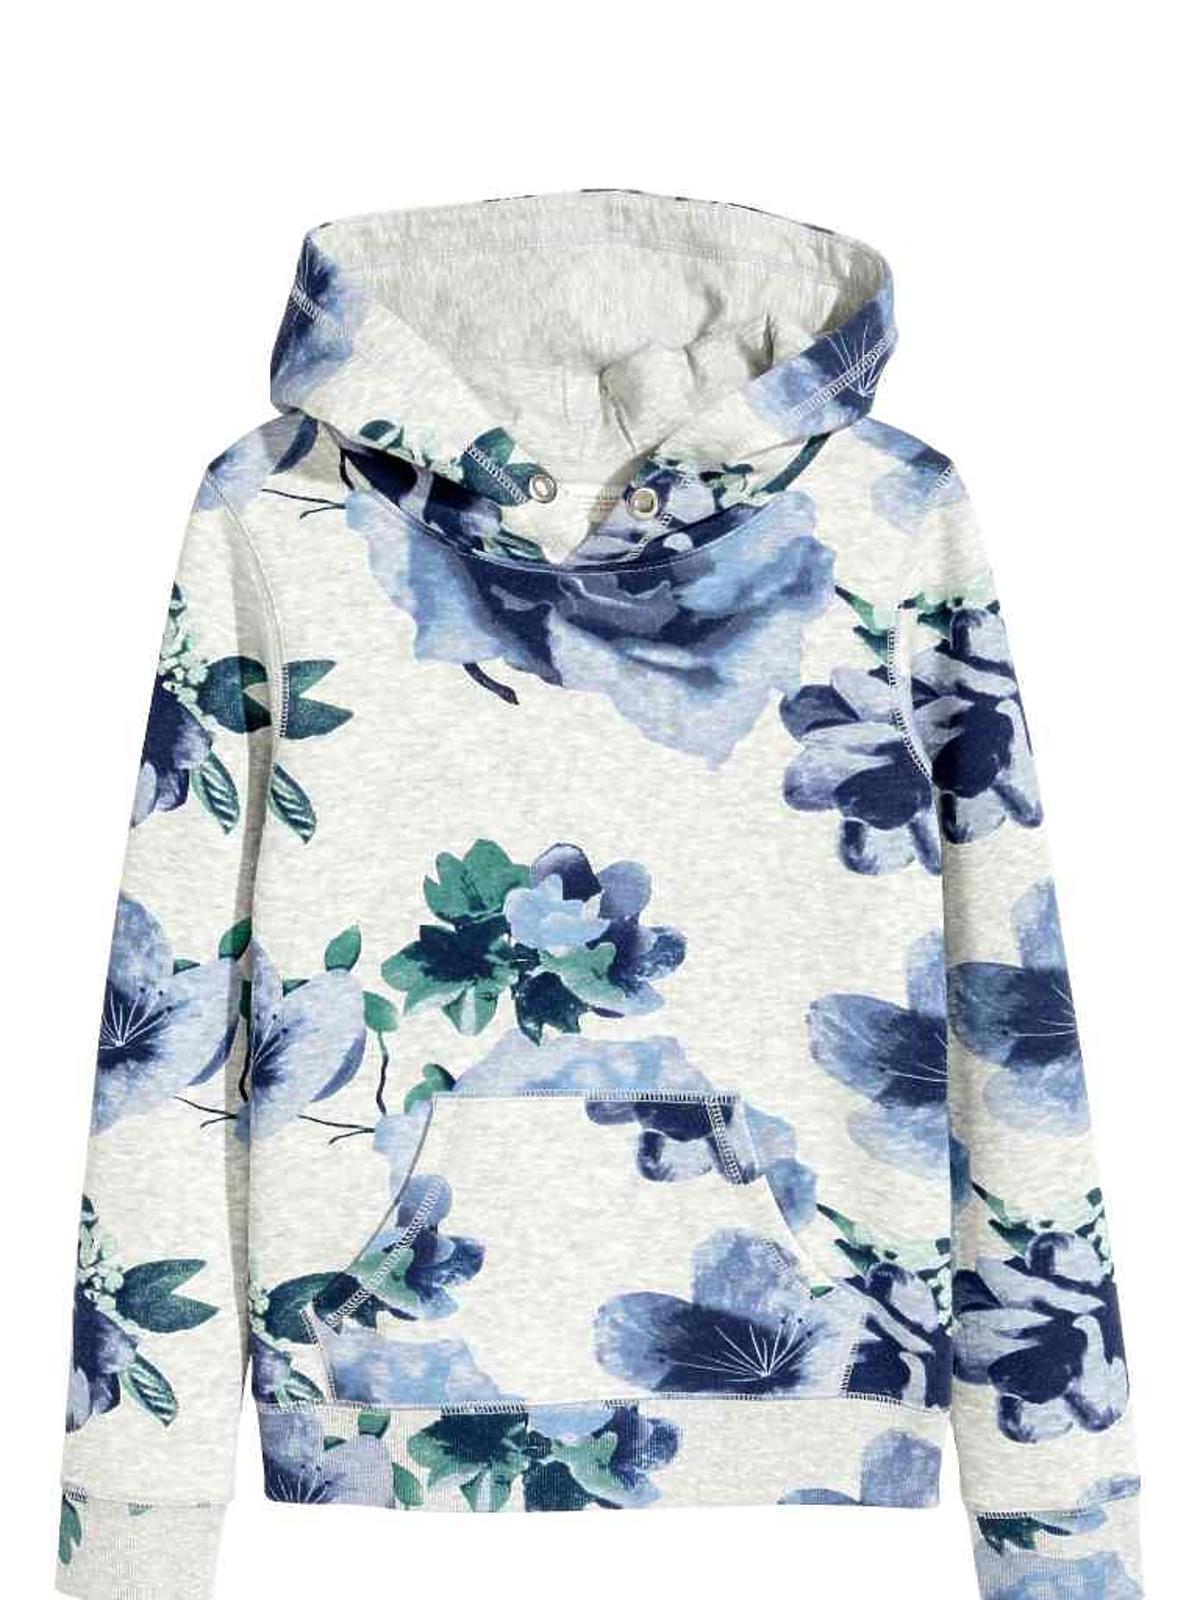 Bluza dresowa w kwiaty, H&M, 47,90 zł ( z 79,90 zł)